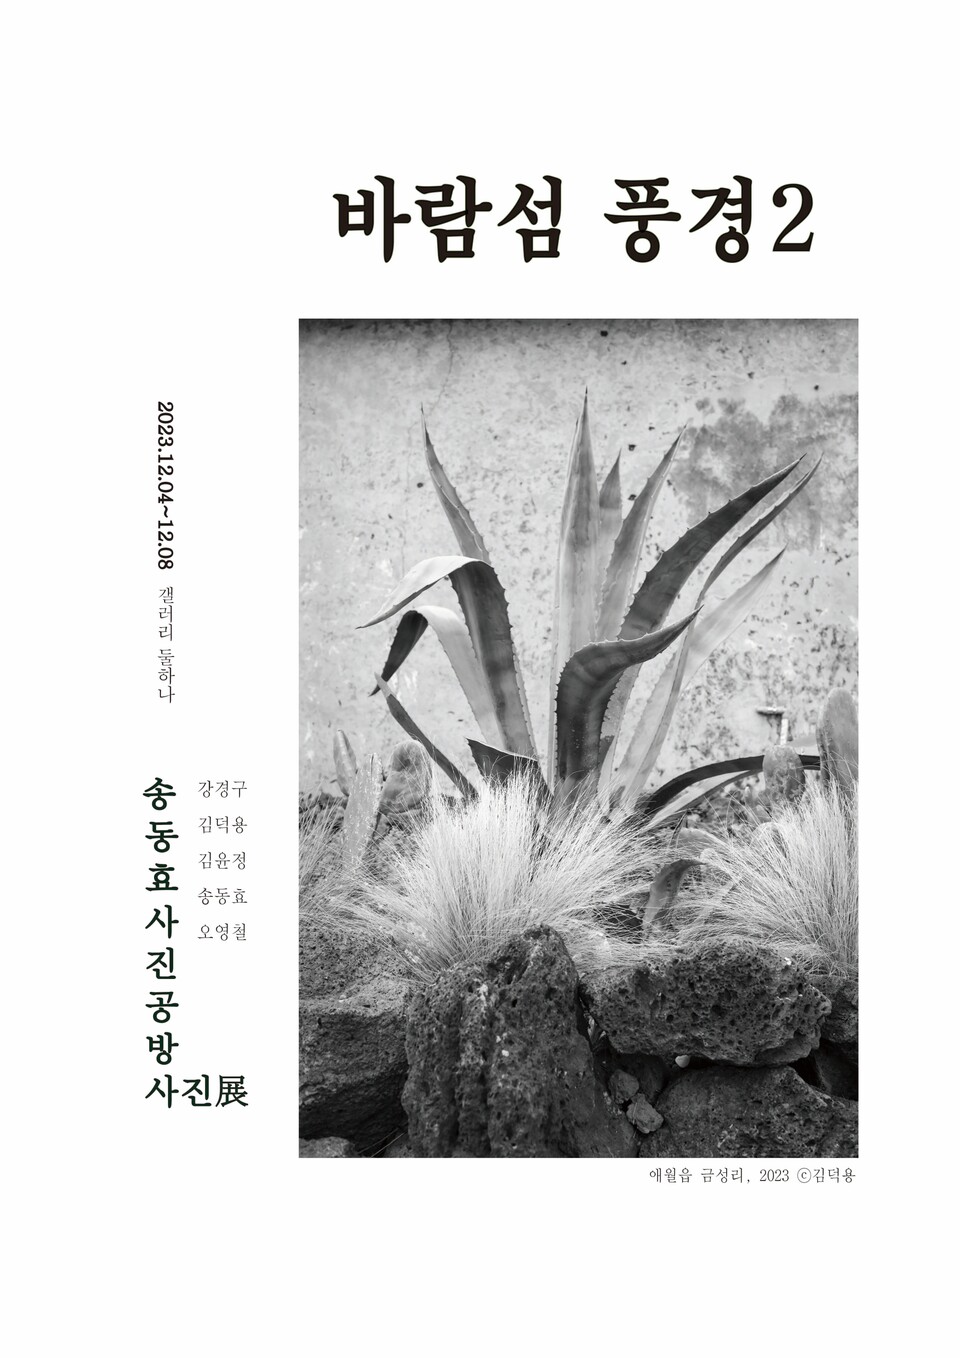 송동효사진공방이 12월4일부터 8일까지 이도1동 갤러리 둘하나에서 '바람섬 풍경 2' 흑백사진전을 연다.